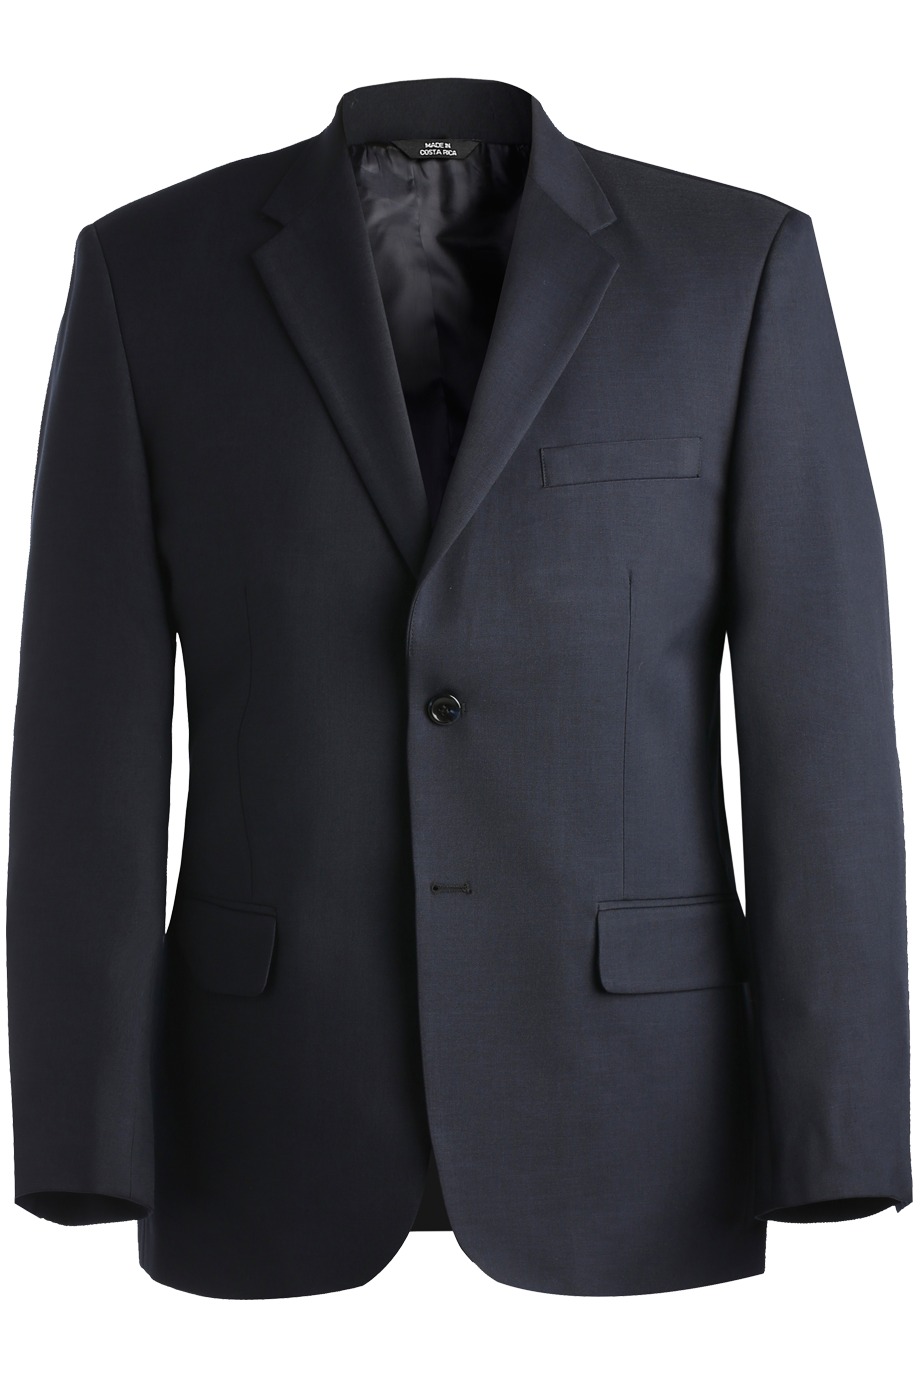 Edwards Garment 3525 - Synergy Washable Coat